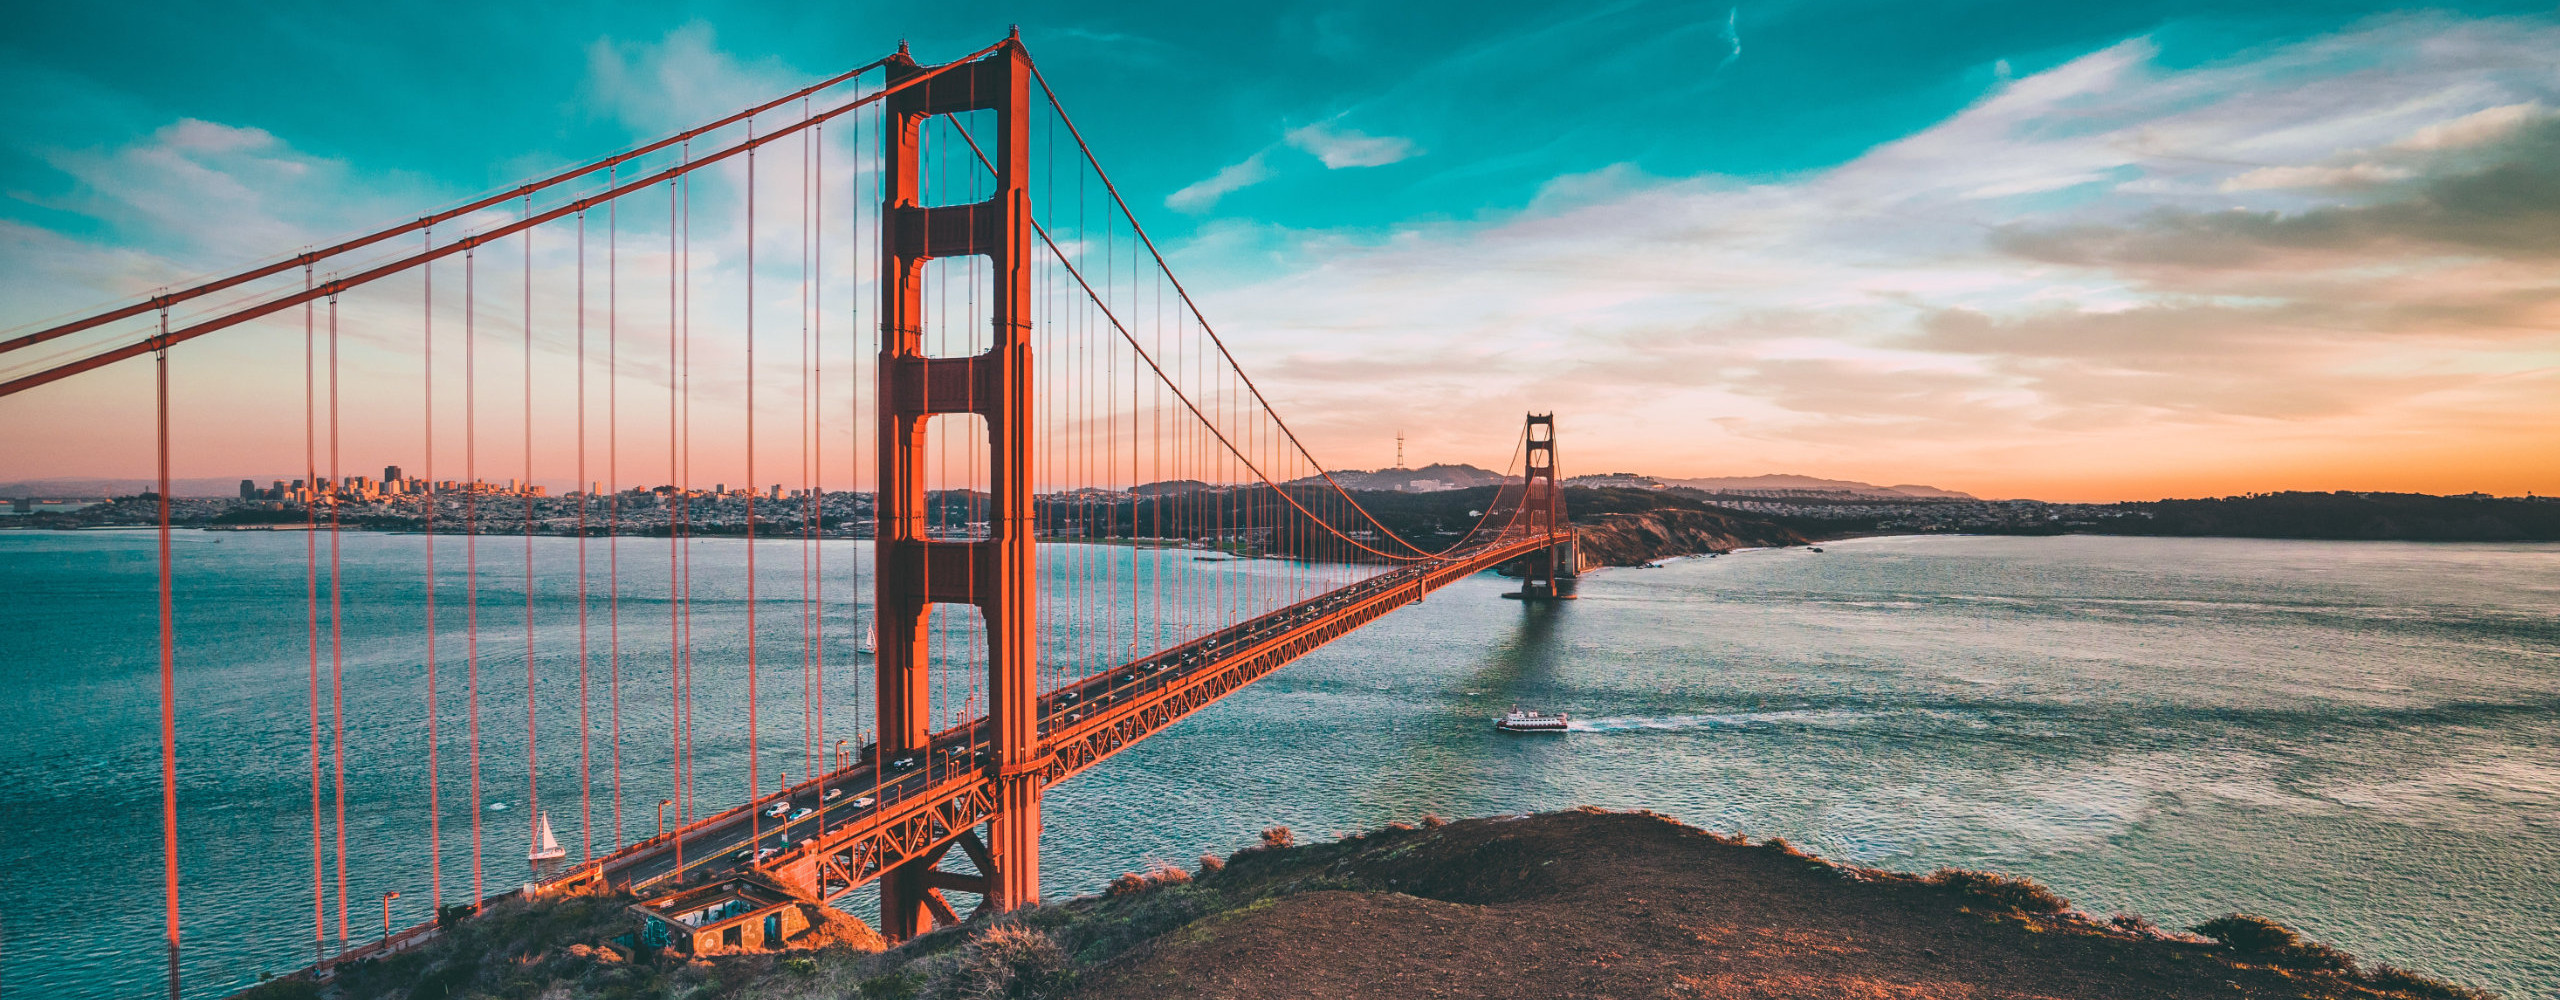 Bild der Golden Gate Brücke in San Francisco